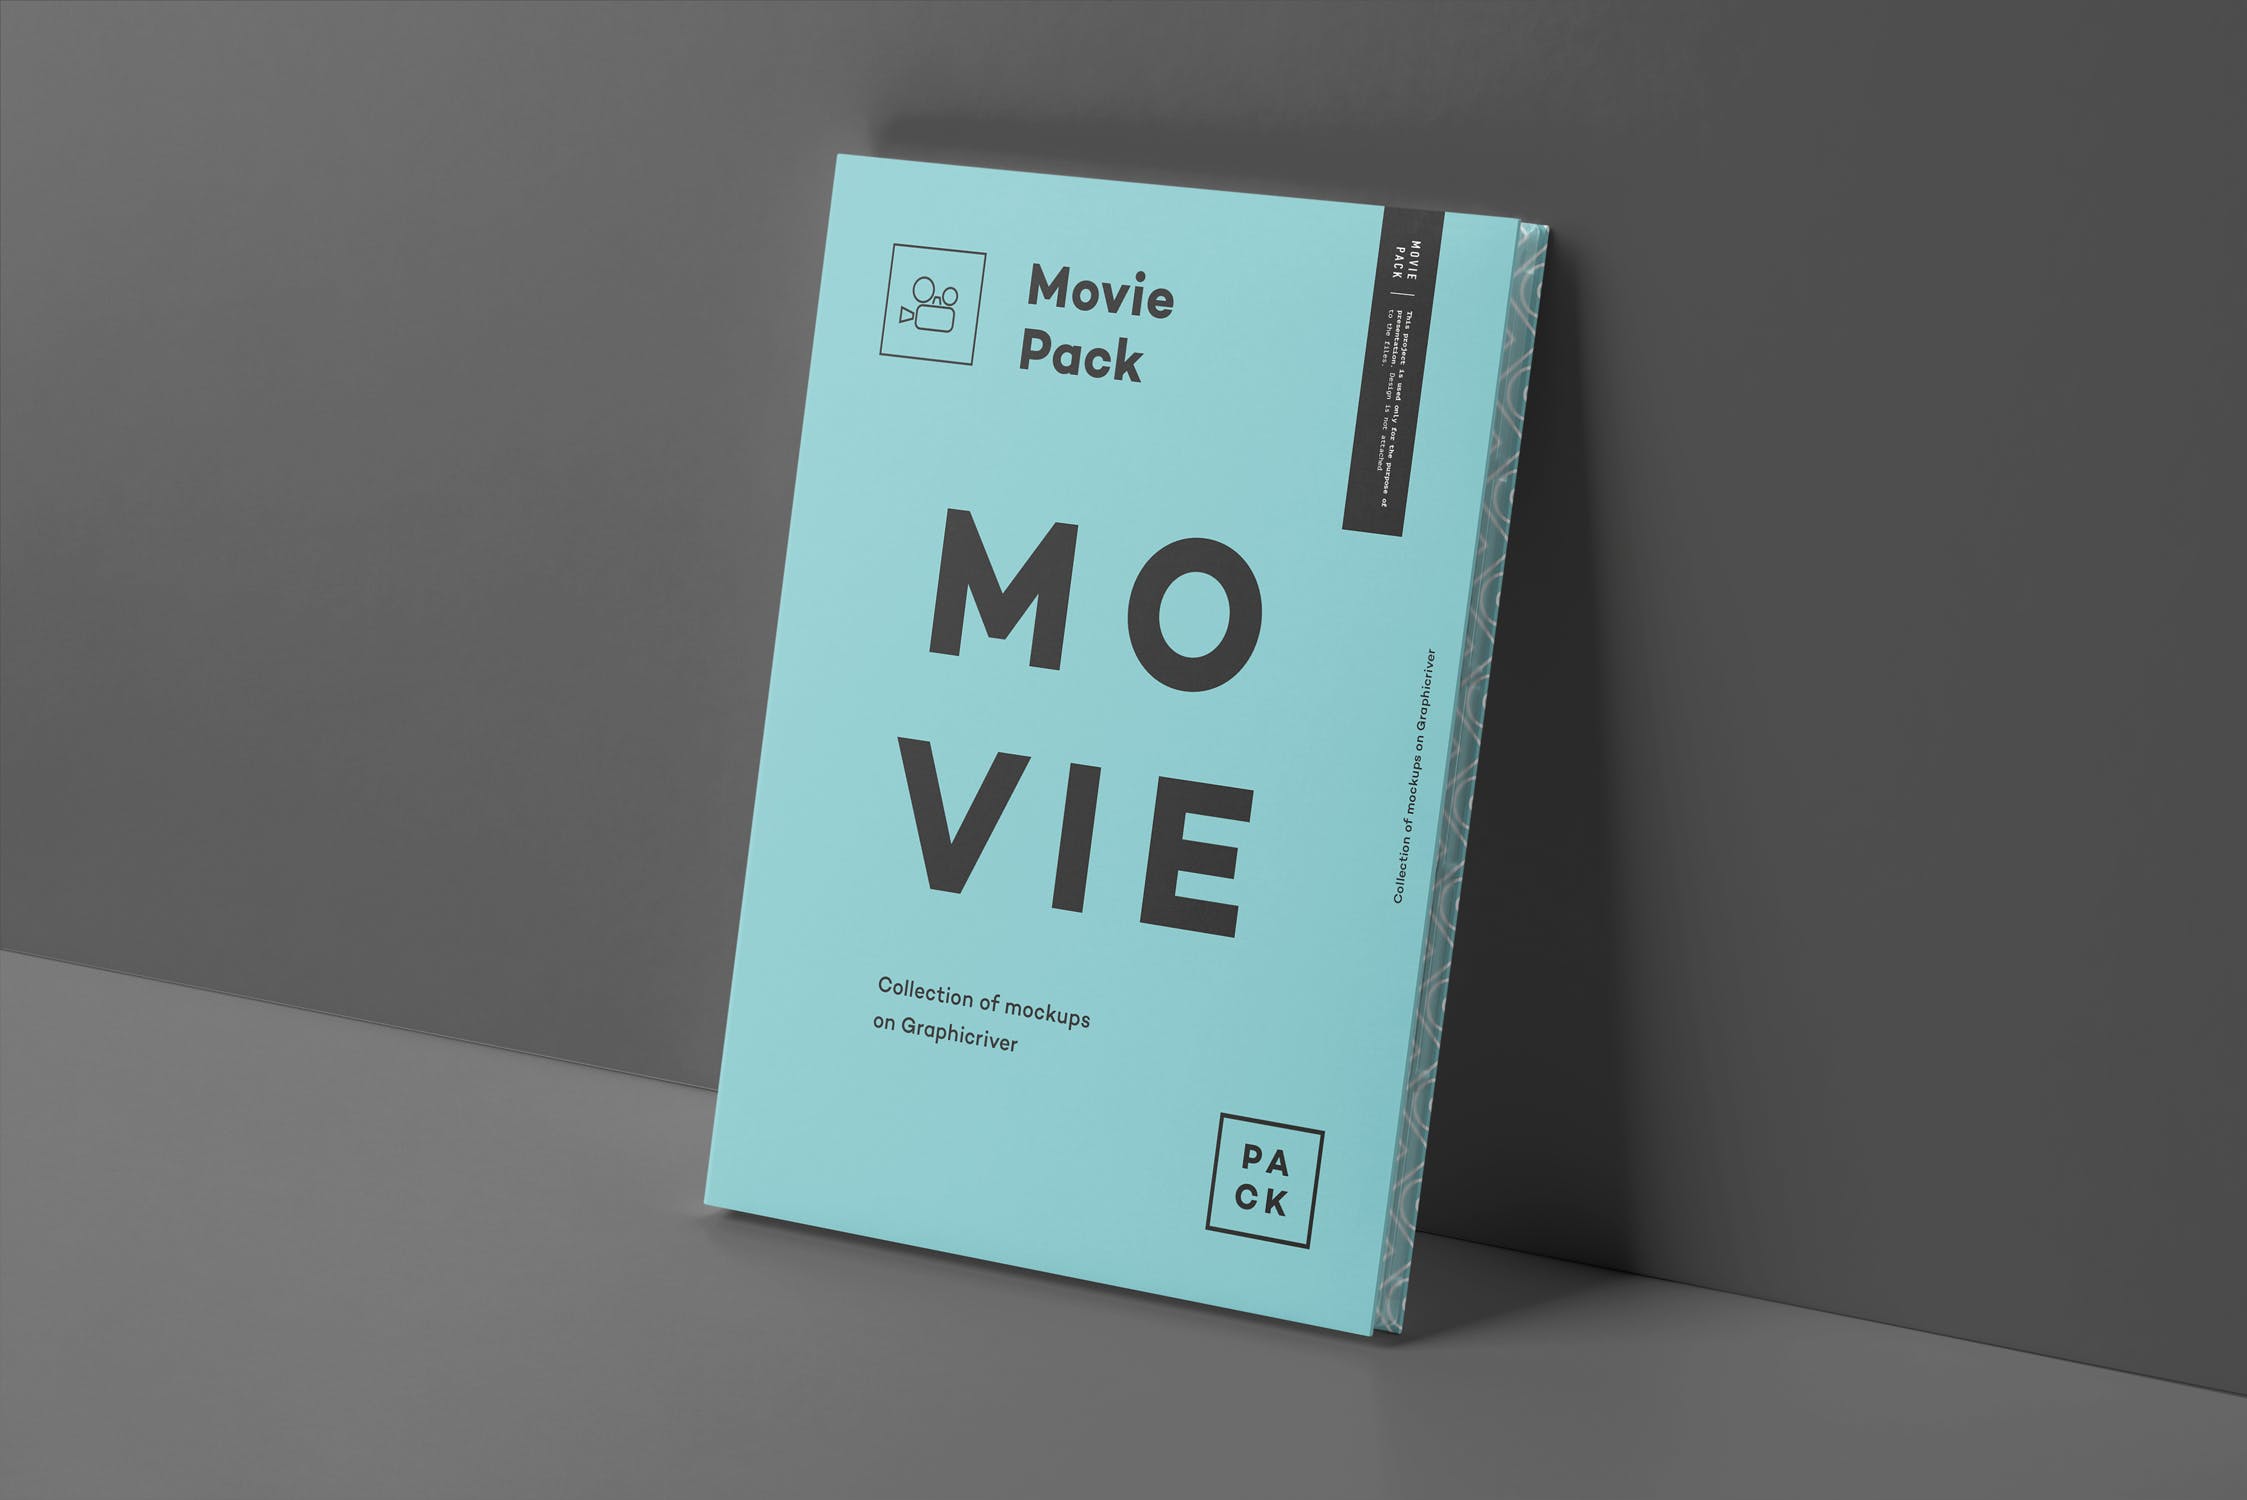 电影DVD包装盒外观设计样机3 Movie Pack Mock-up 3插图(13)